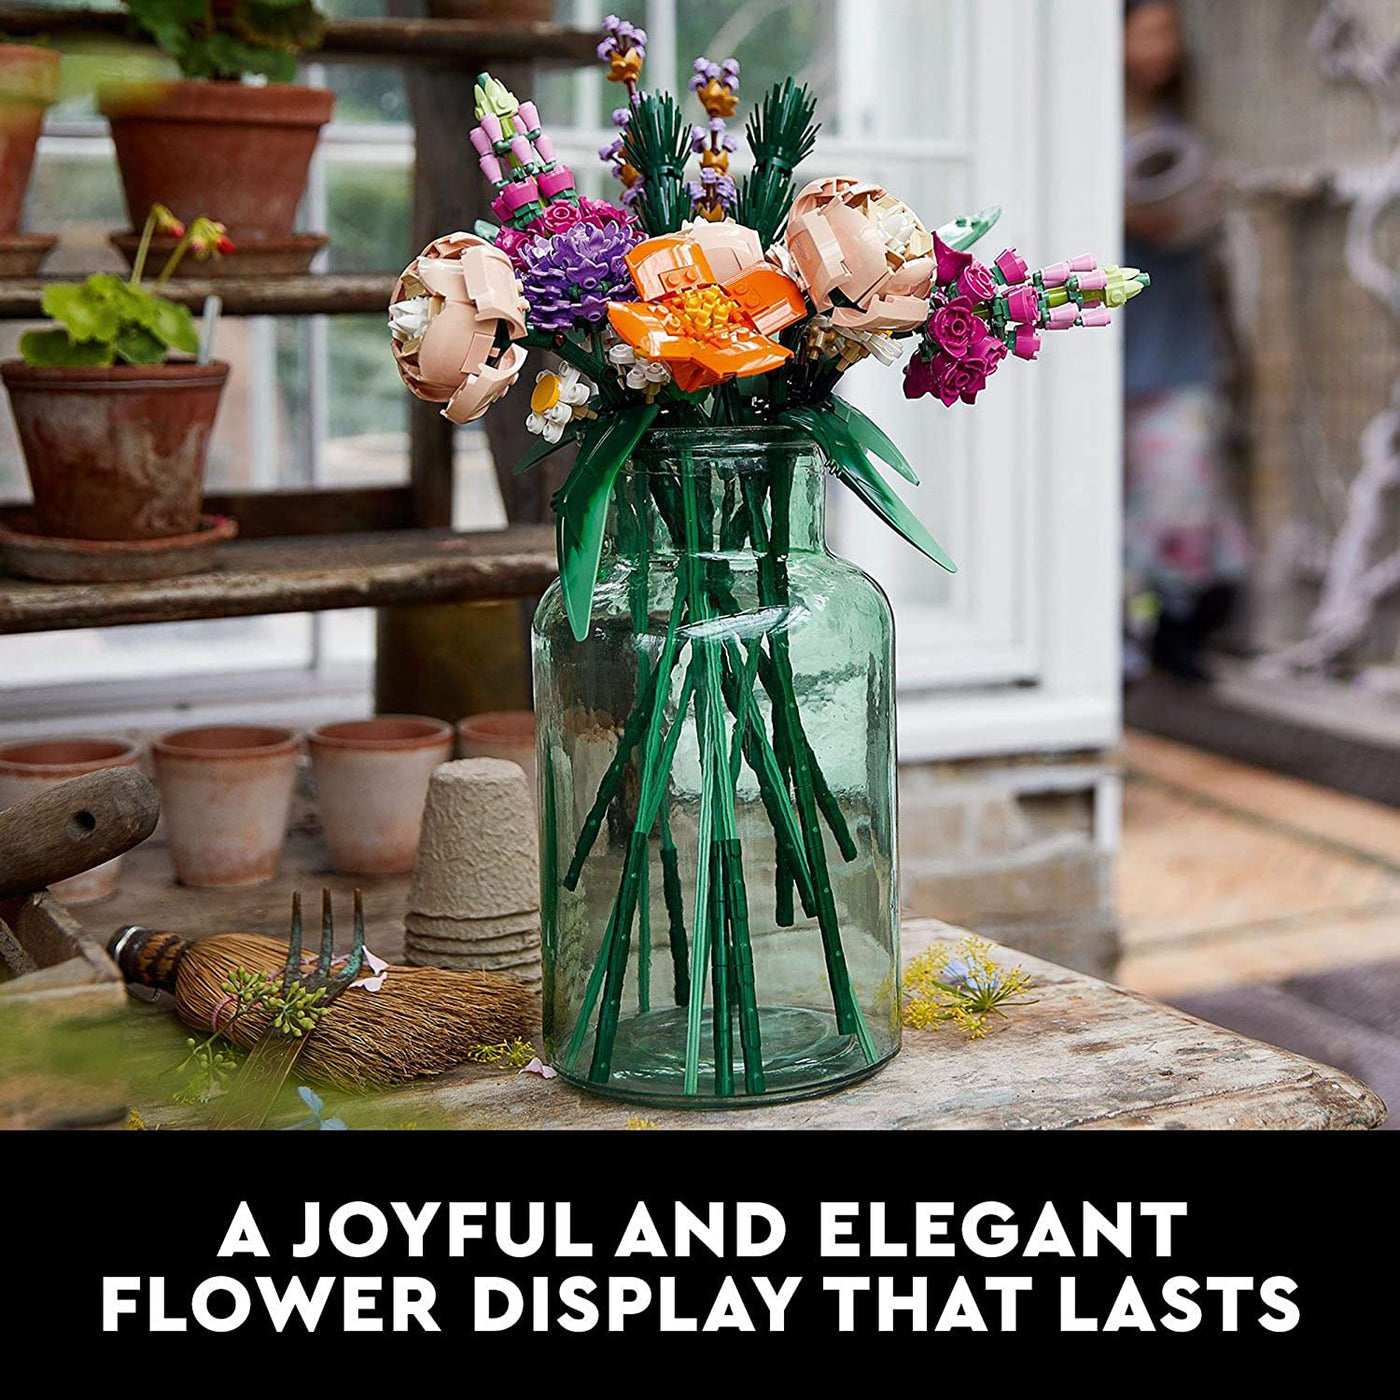 Flower Bouquet: 10280 Icons - 756 PCS | LEGO®